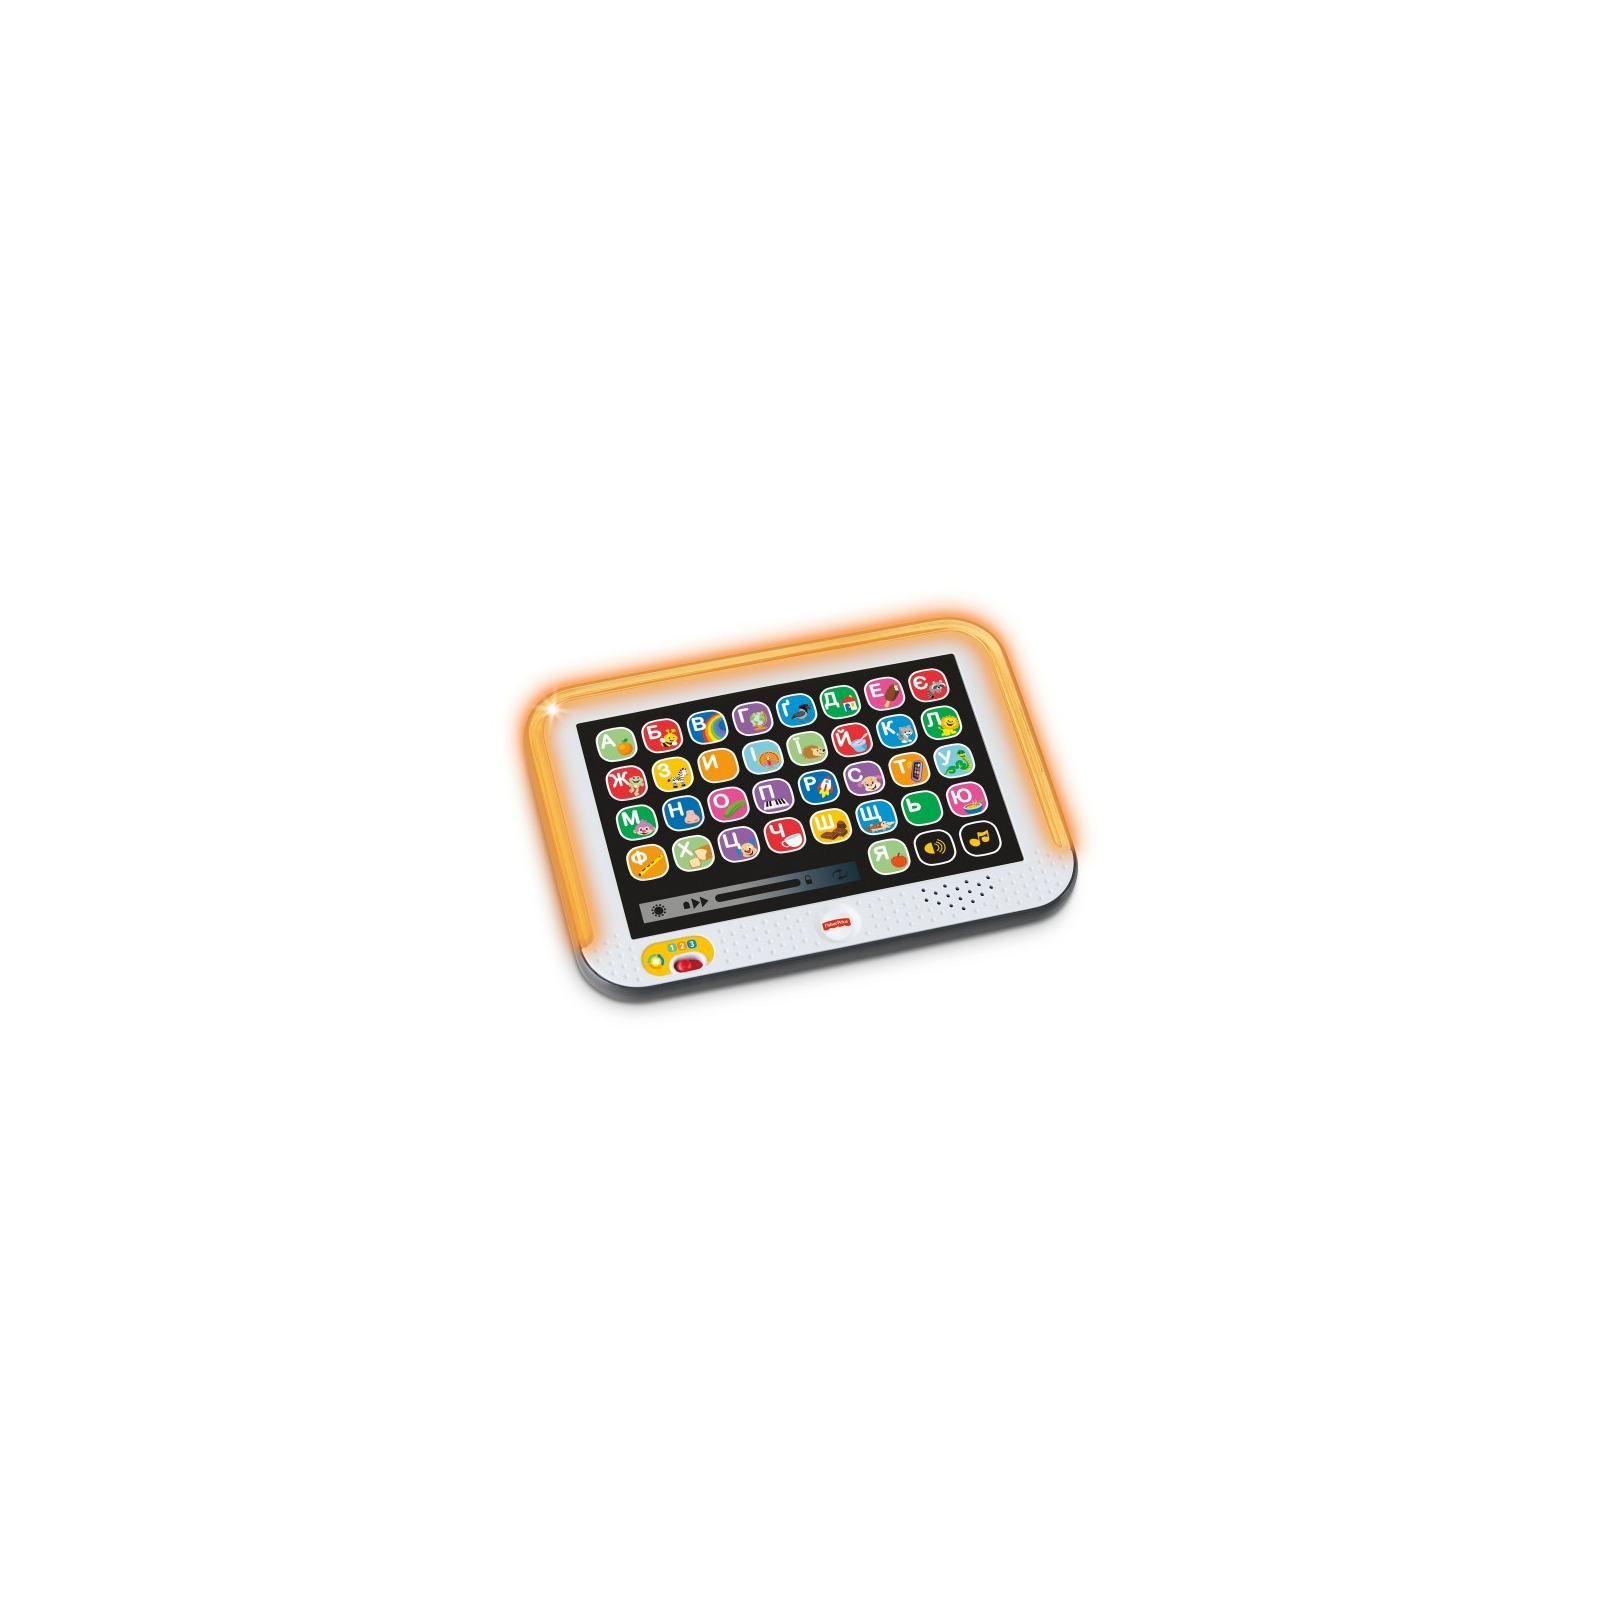 Развивающая игрушка Fisher-Price Умный планшет с технологией Smart Stages (укр.) (FBR86)